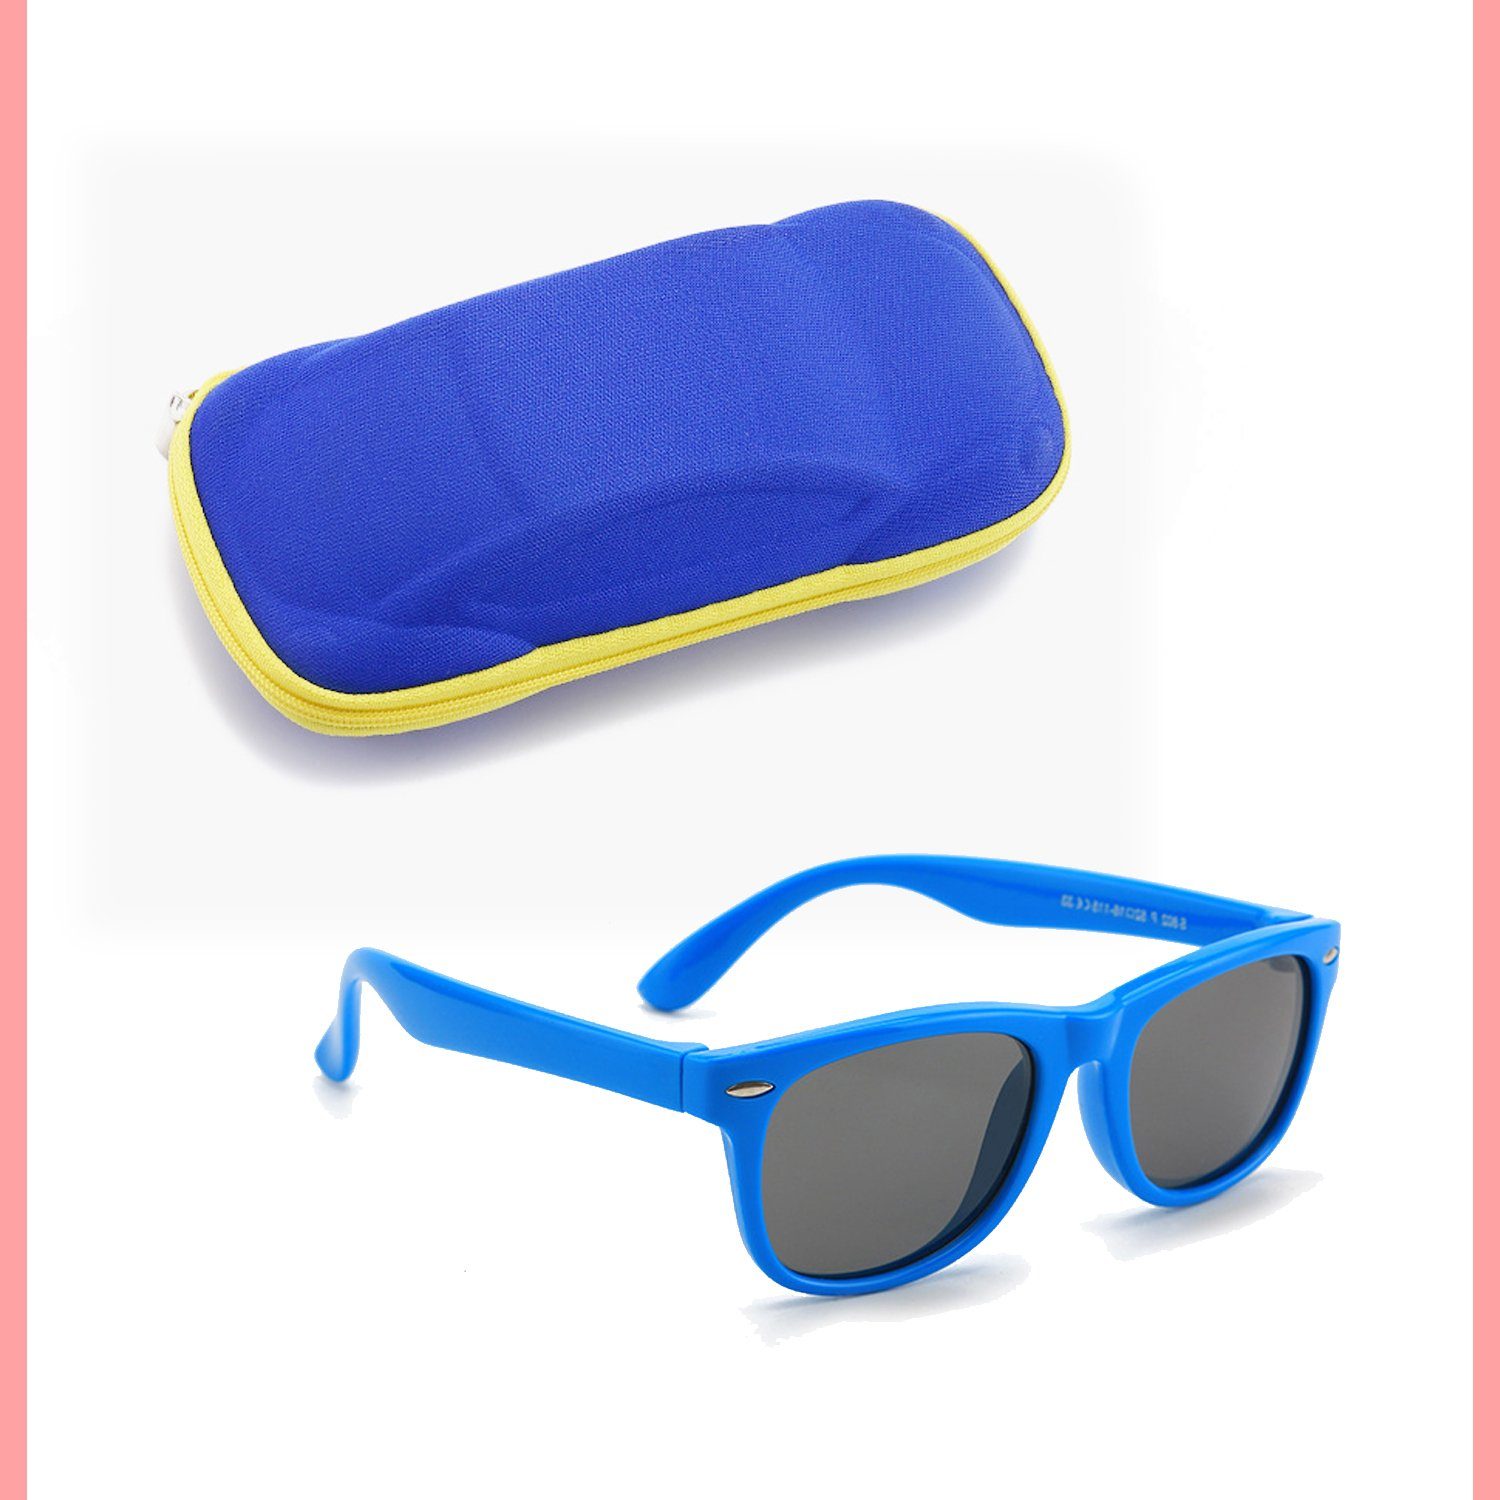 Olotos Sonnenbrille Sonnenbrille für Kinder Mädchen Jungen Gummi 100% UV400 Schutz Brille Blau mit Brillenetui